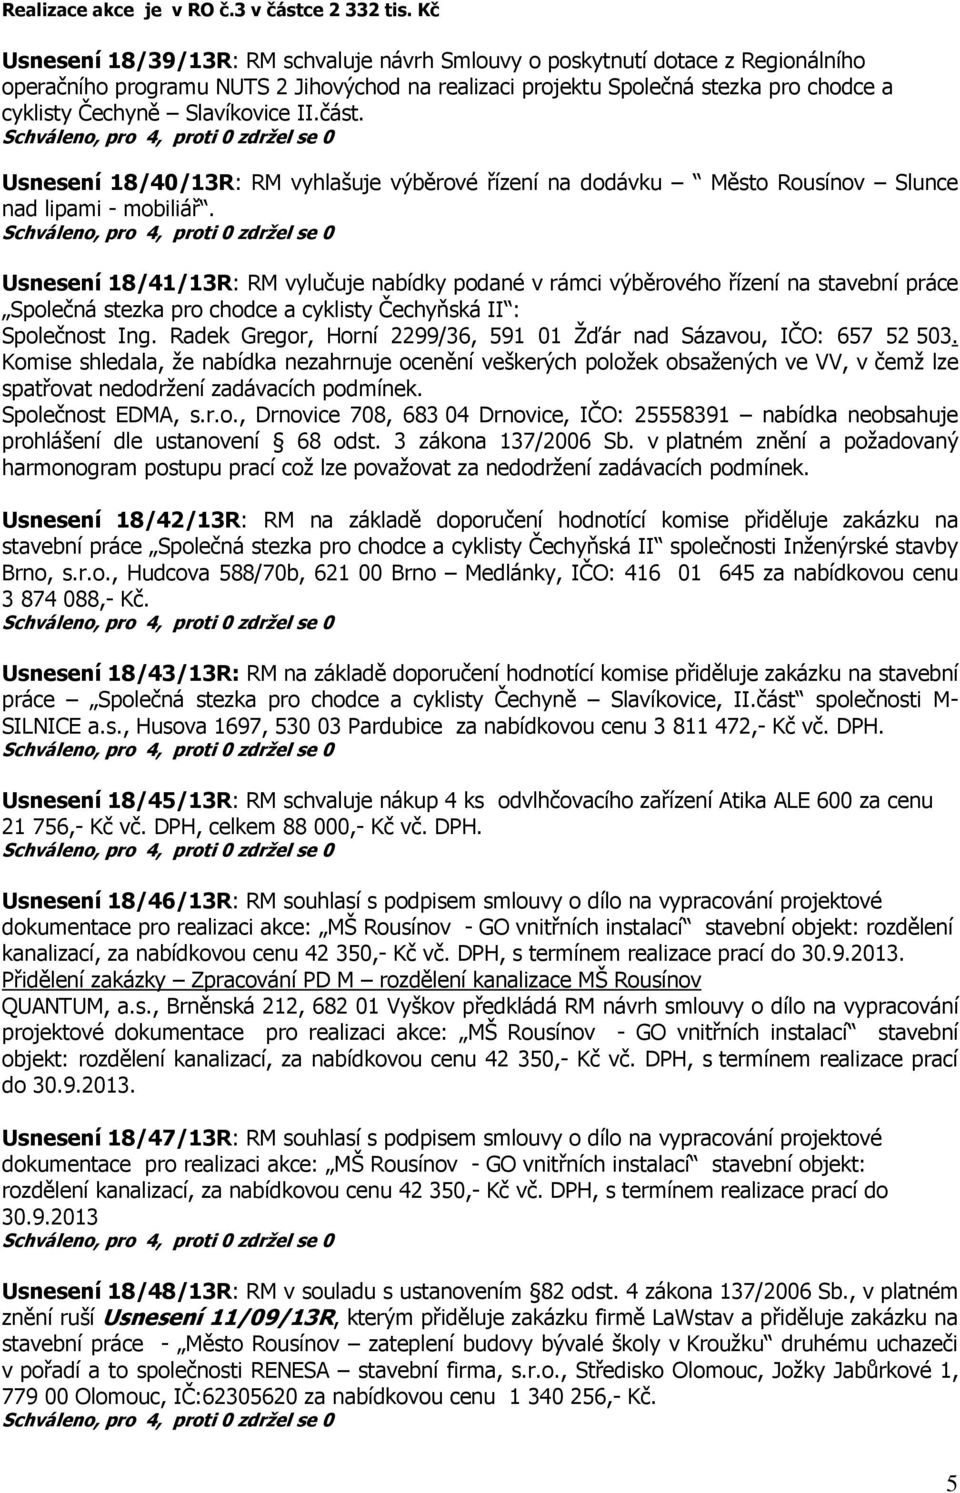 Slavíkovice II.část. Usnesení 18/40/13R: RM vyhlašuje výběrové řízení na dodávku Město Rousínov Slunce nad lipami - mobiliář.